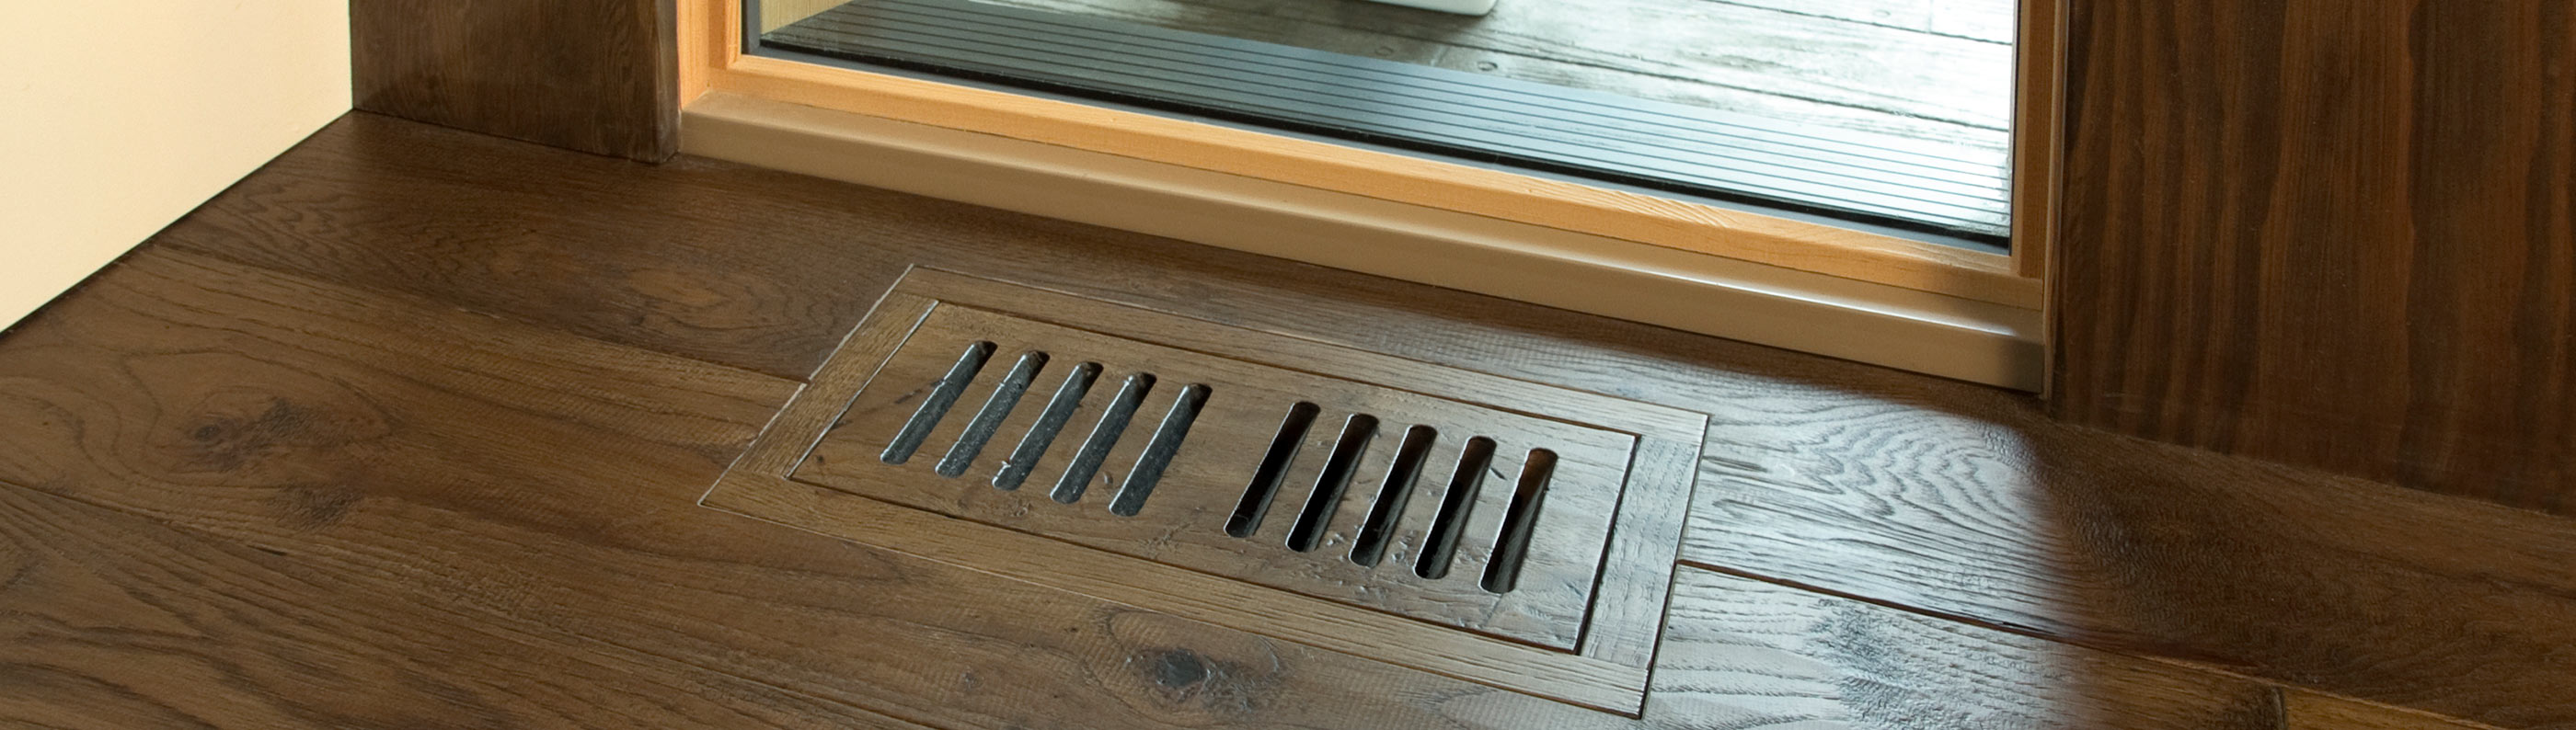 Accessories Craft Floor, Floor Registers For Hardwood Floors